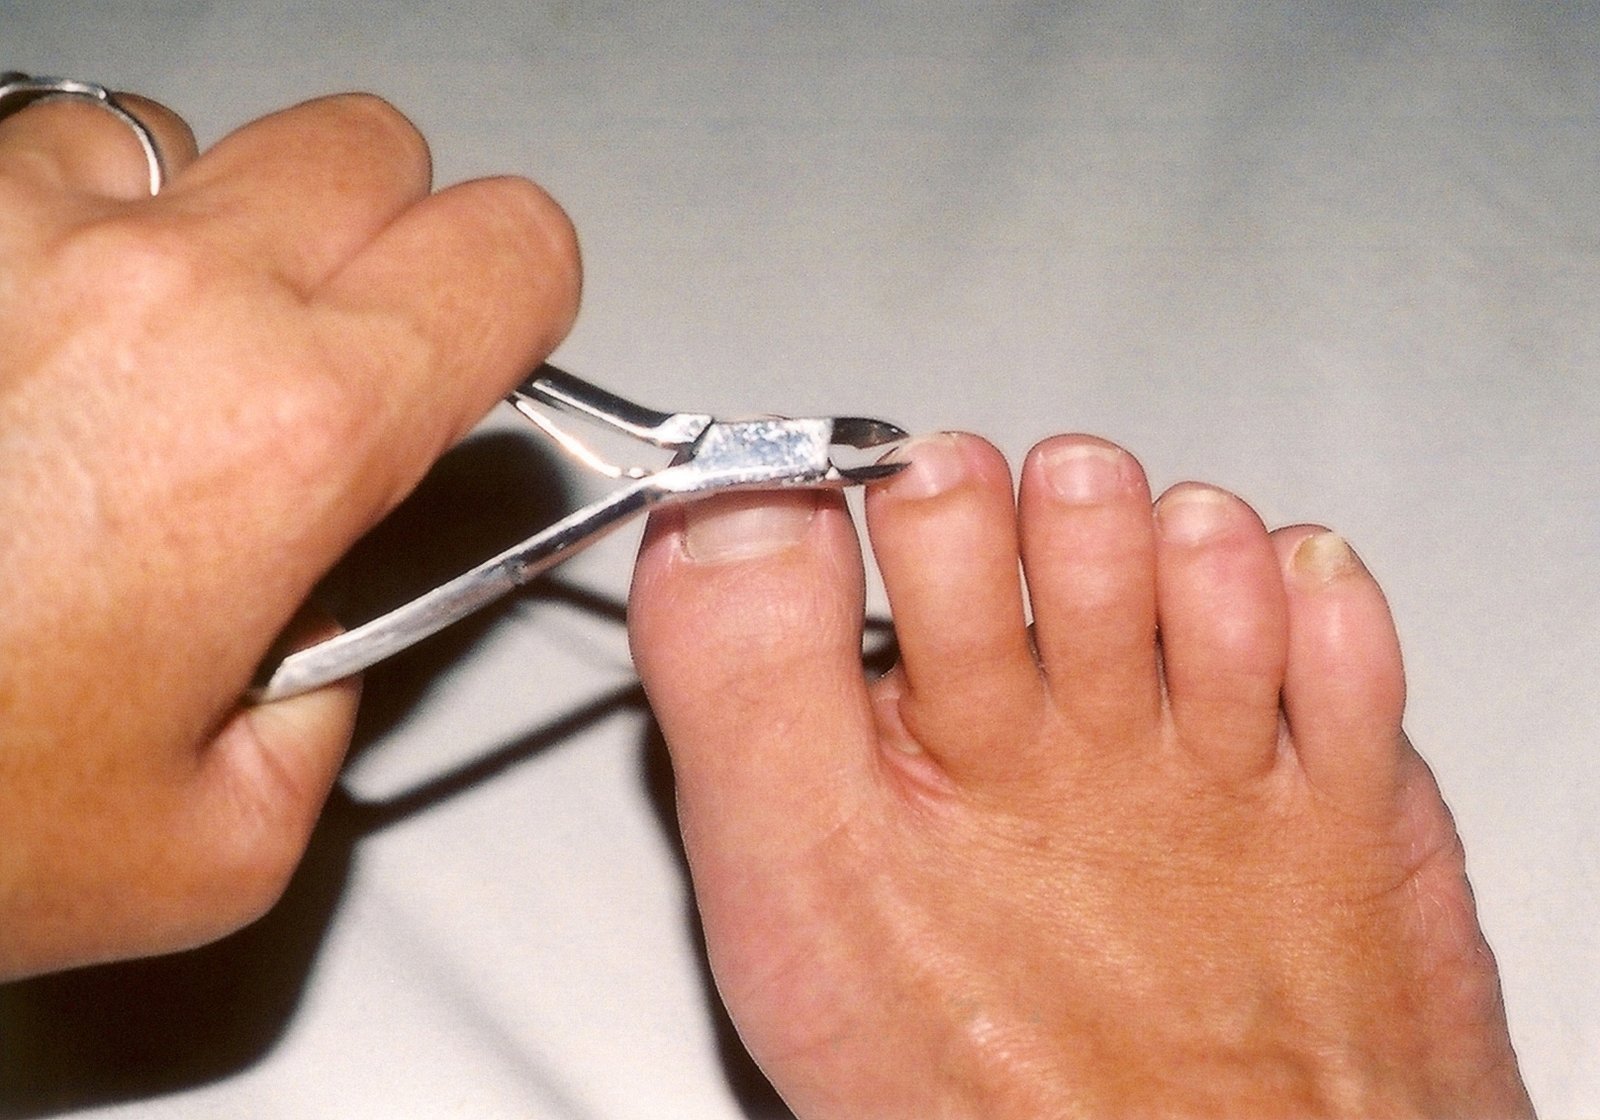 toenail-cutting-1500741